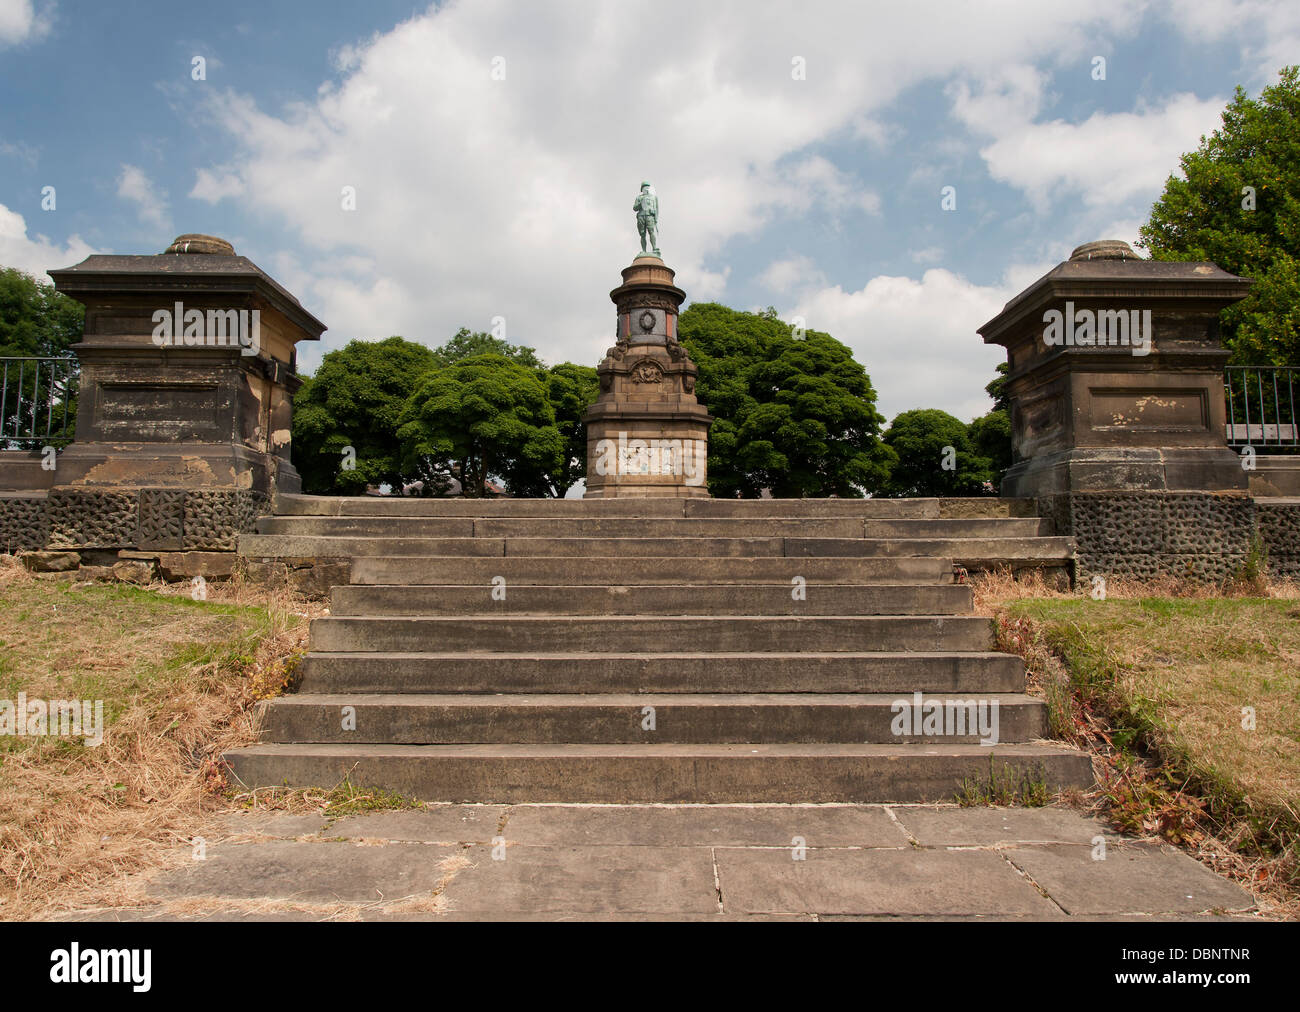 Statua commemorativa di soldati uccisi nella guerra boera, Foto Stock